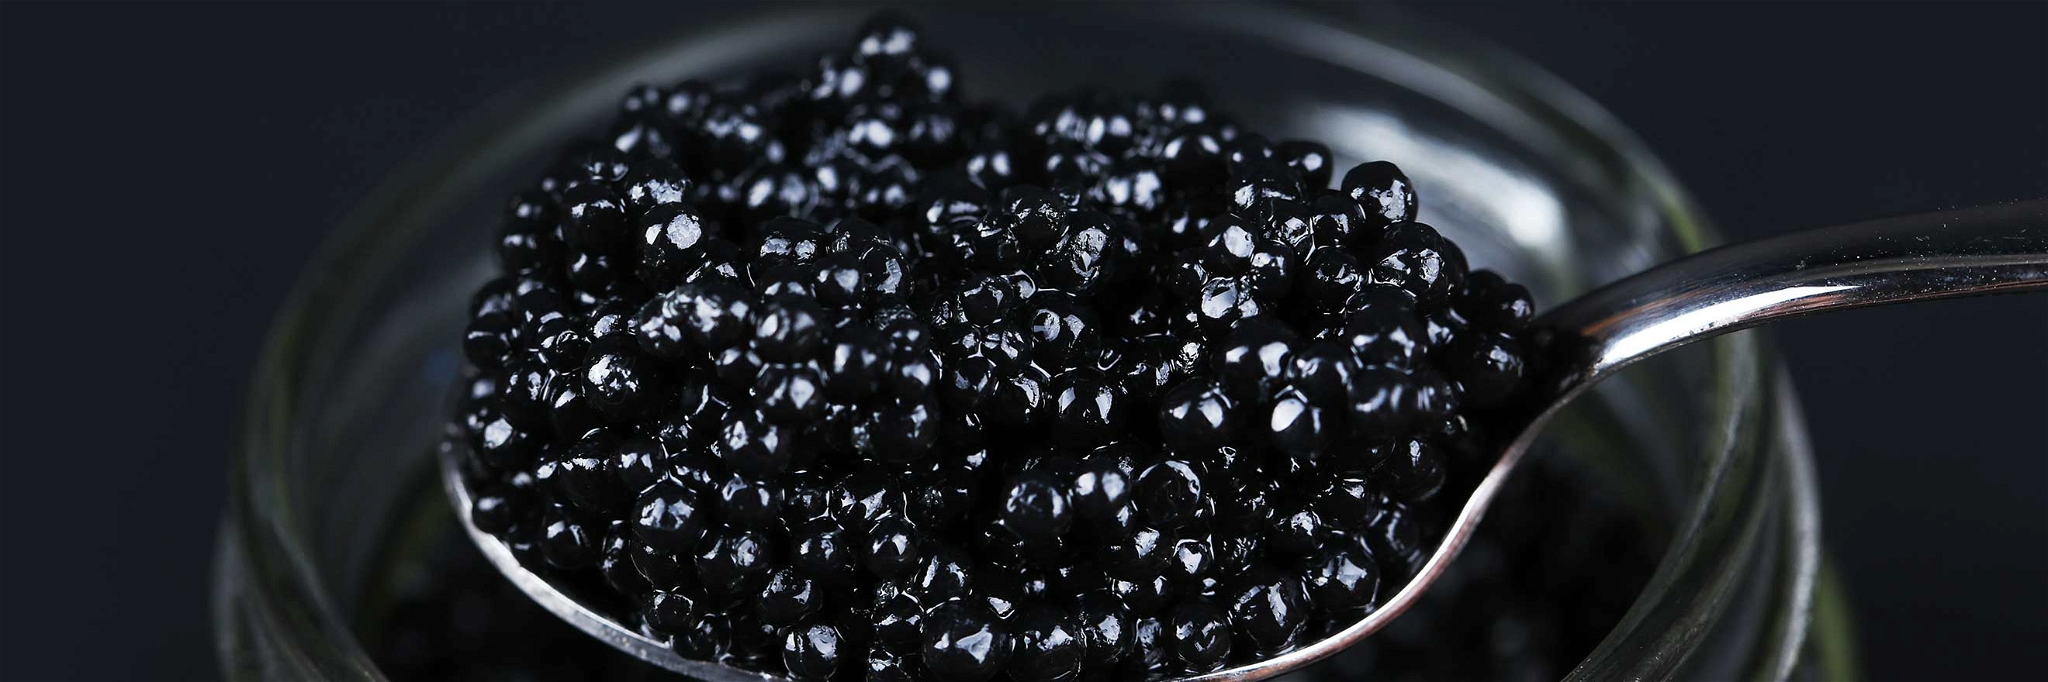 Zu Festtagen ist Kaviar ein gefragtes Produkt – heute kommt er vornehmlich aus der Zucht.